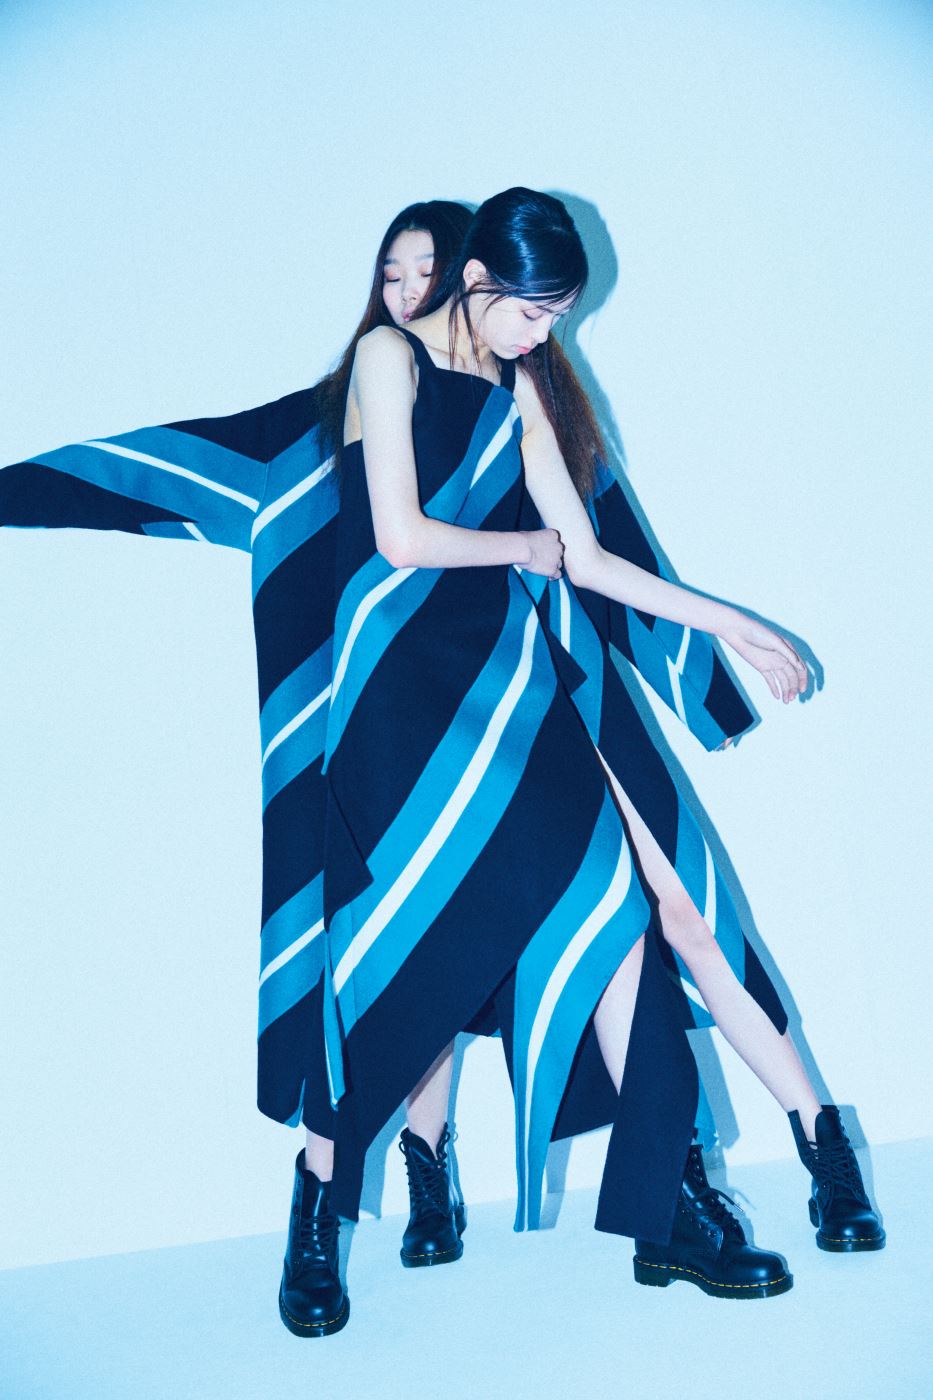 건축적인 줄무늬 패턴을 더한 슬리브리스 드레스와 코트는 YCH, 투박한 앵클부츠는 Dr.Martens 제품.